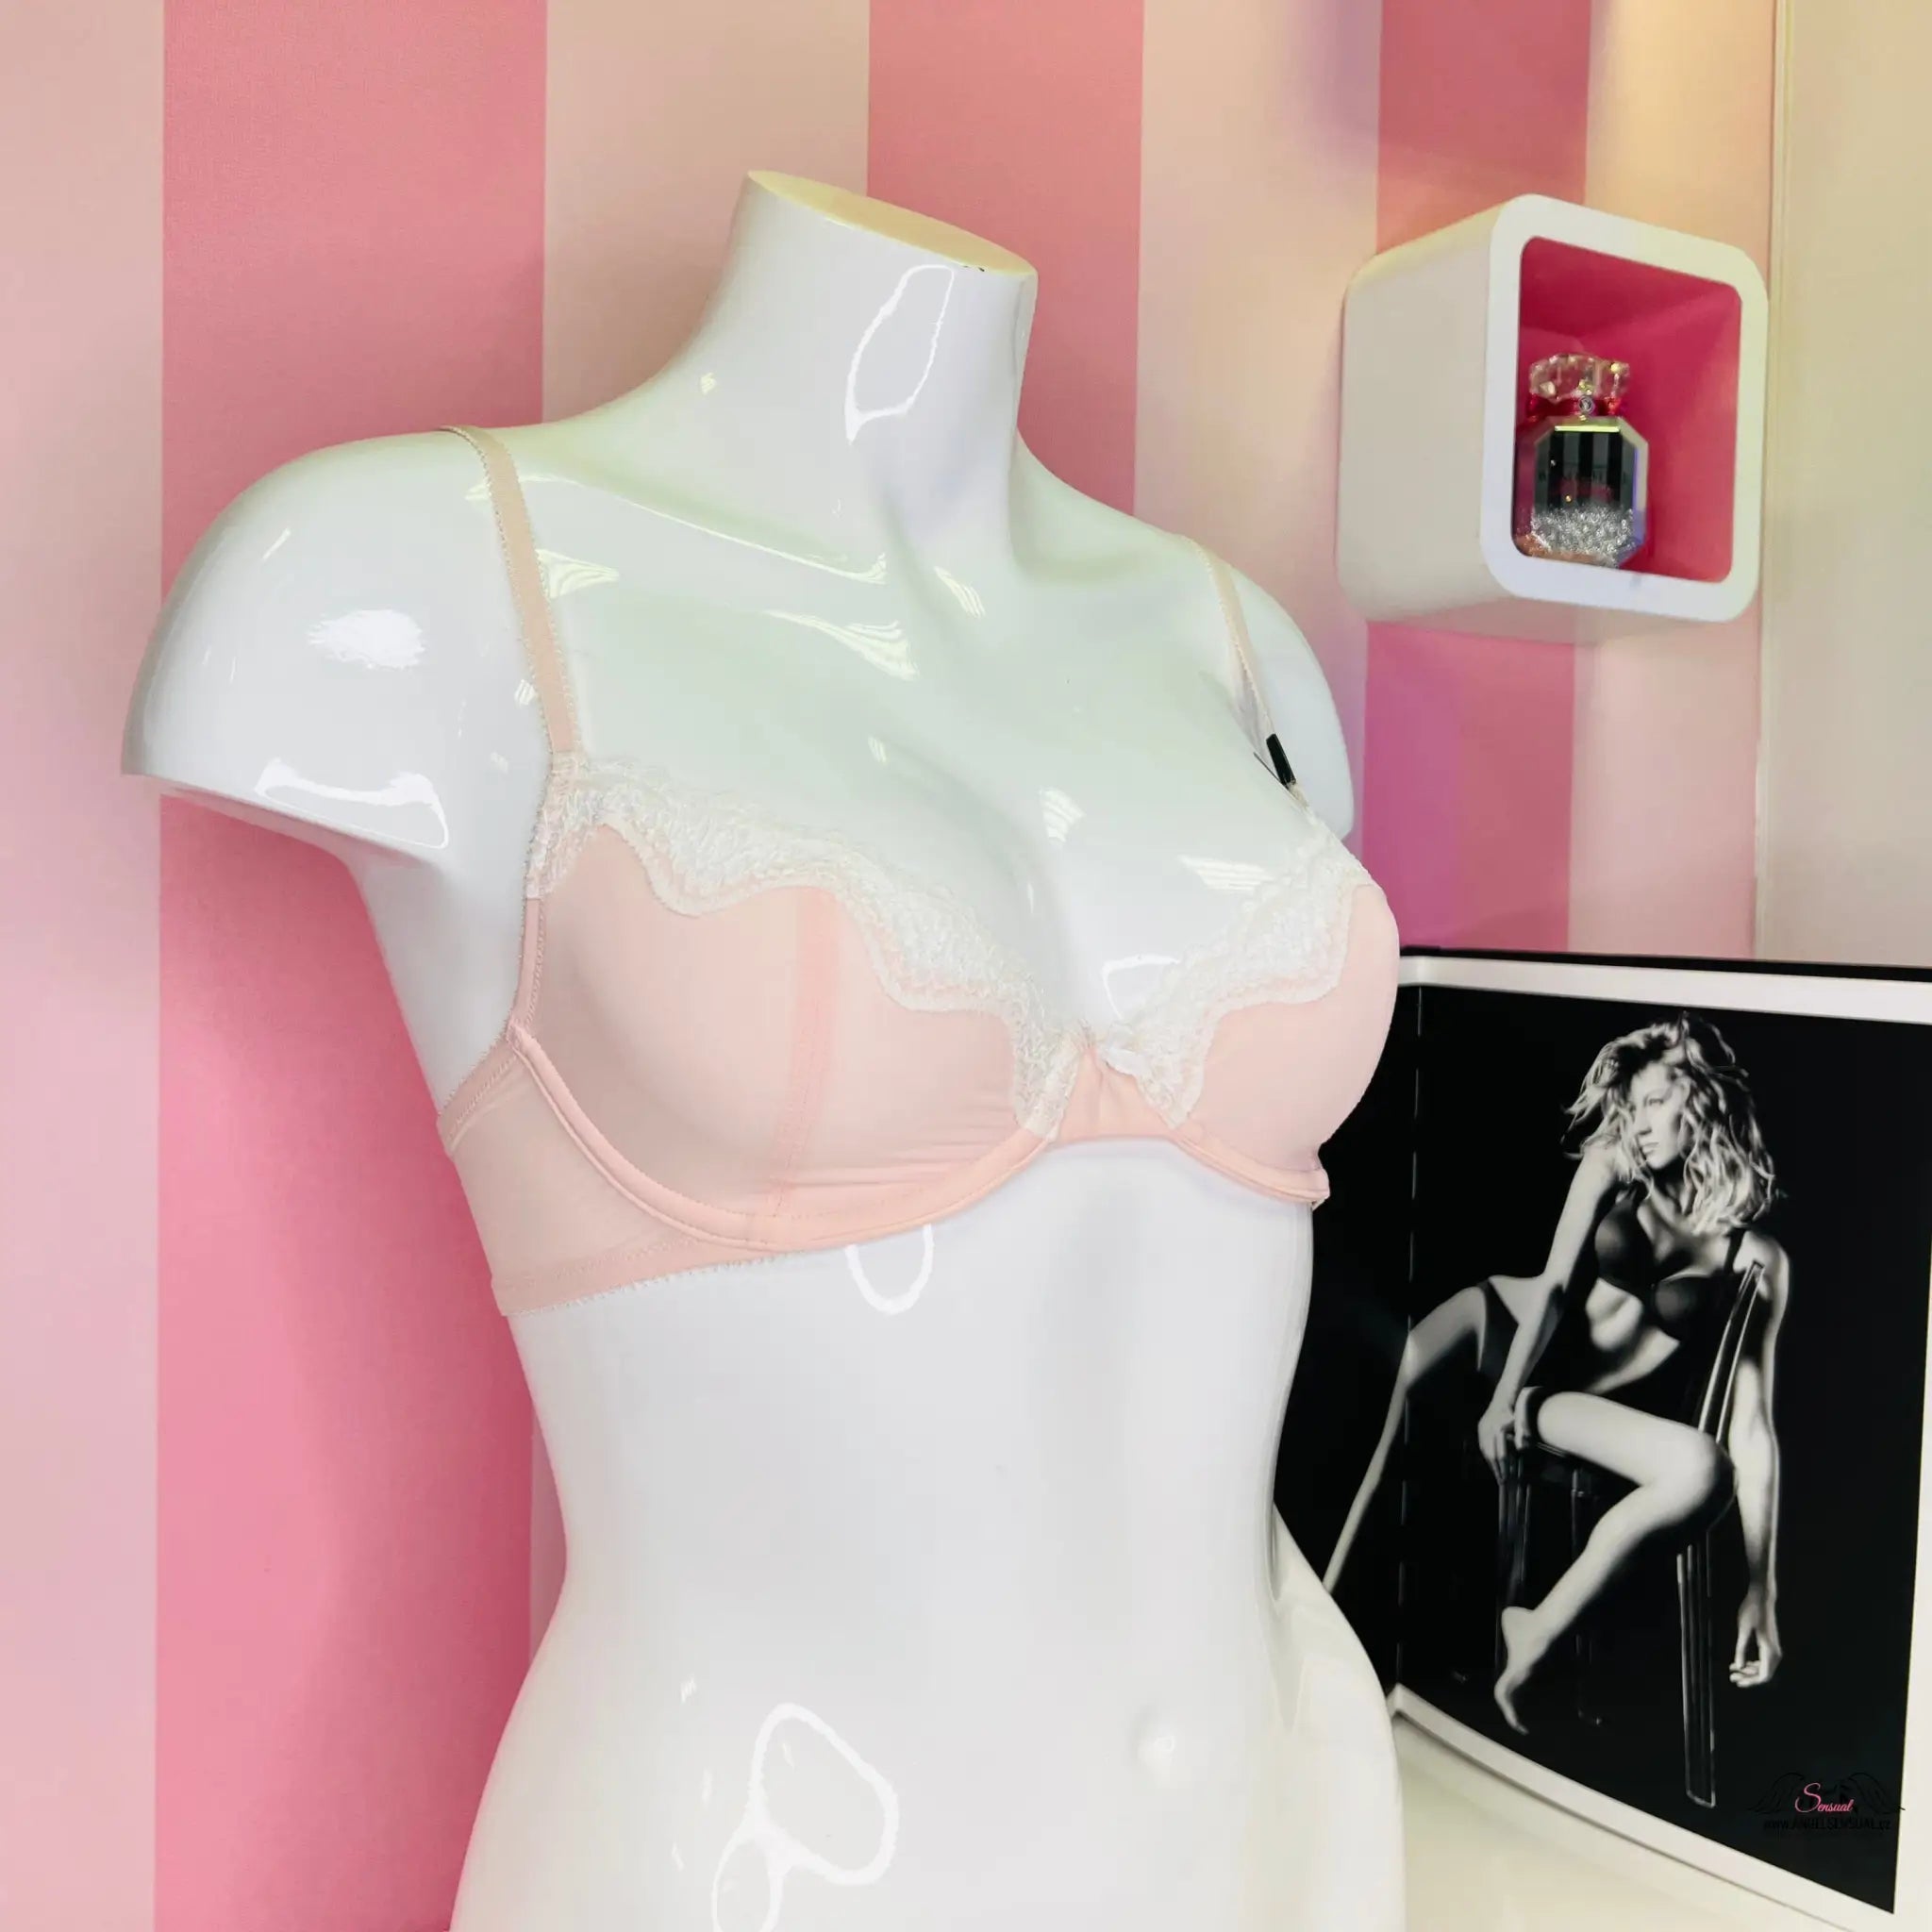 Podprsenka s krajkou - Růžová / 32C / Nové se štítky - Podprsenky Victoria’s Secret